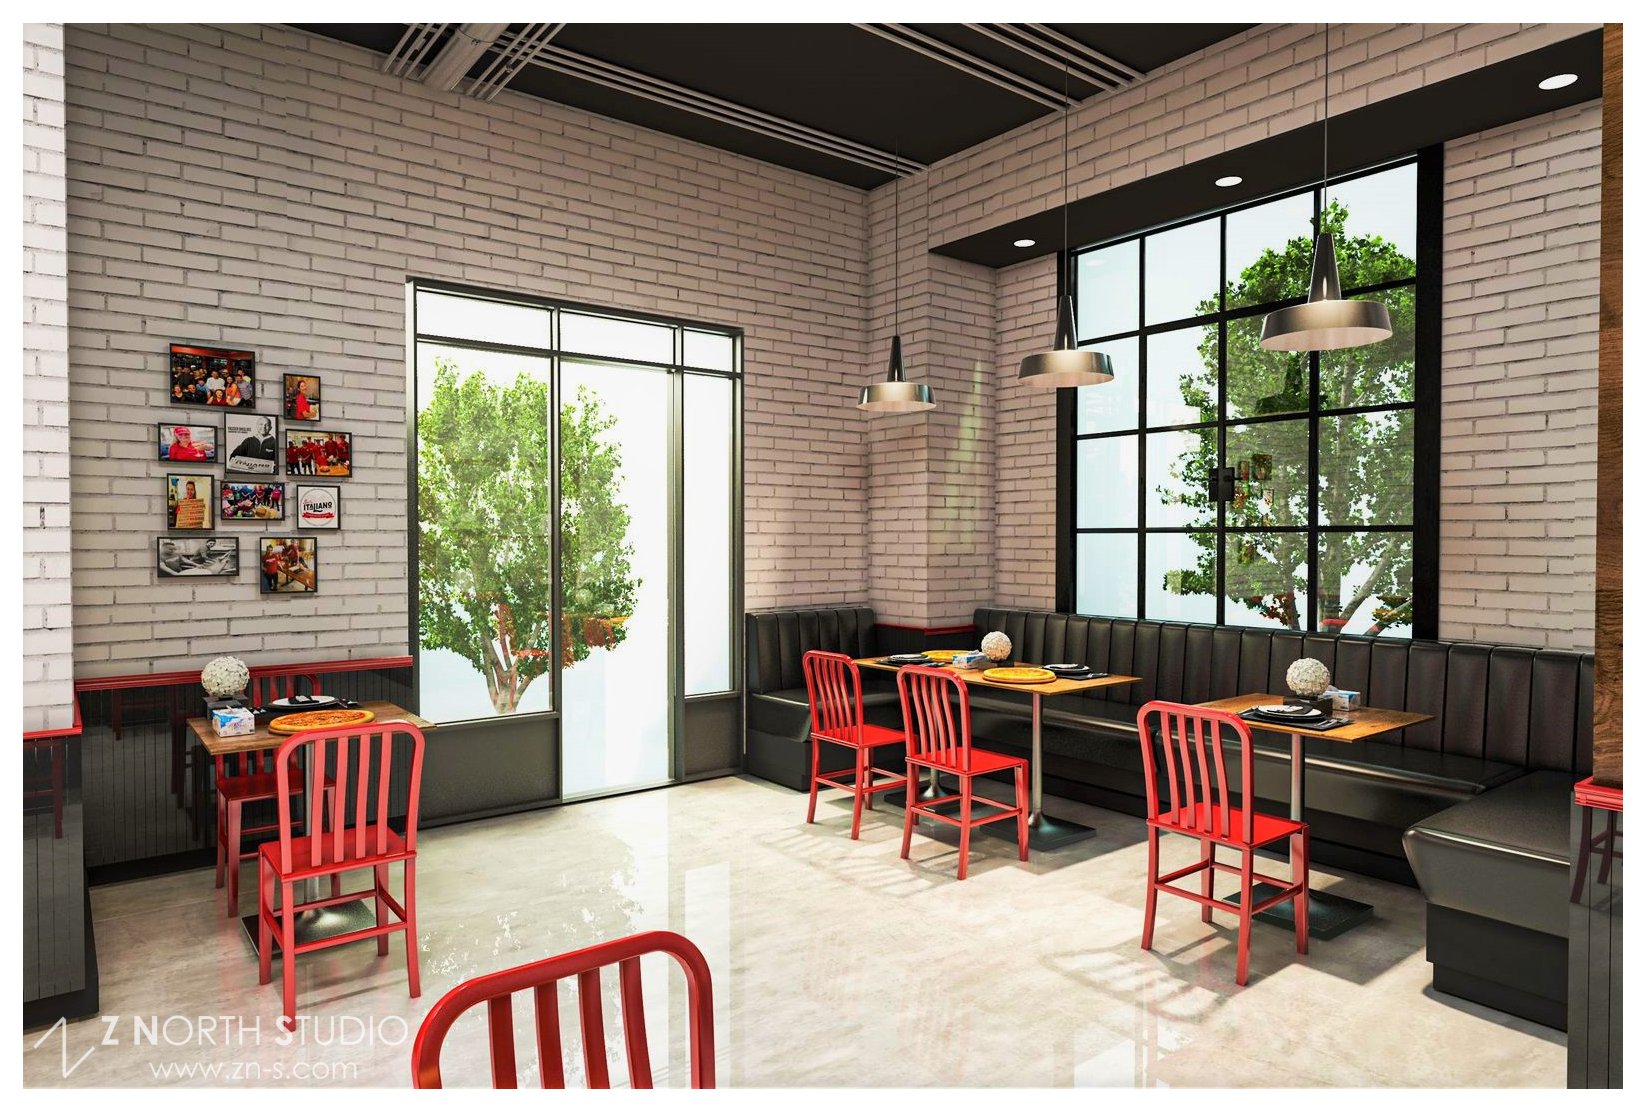 Z North Studio Deli Italiano Great falls interior design restaurant (4).jpg